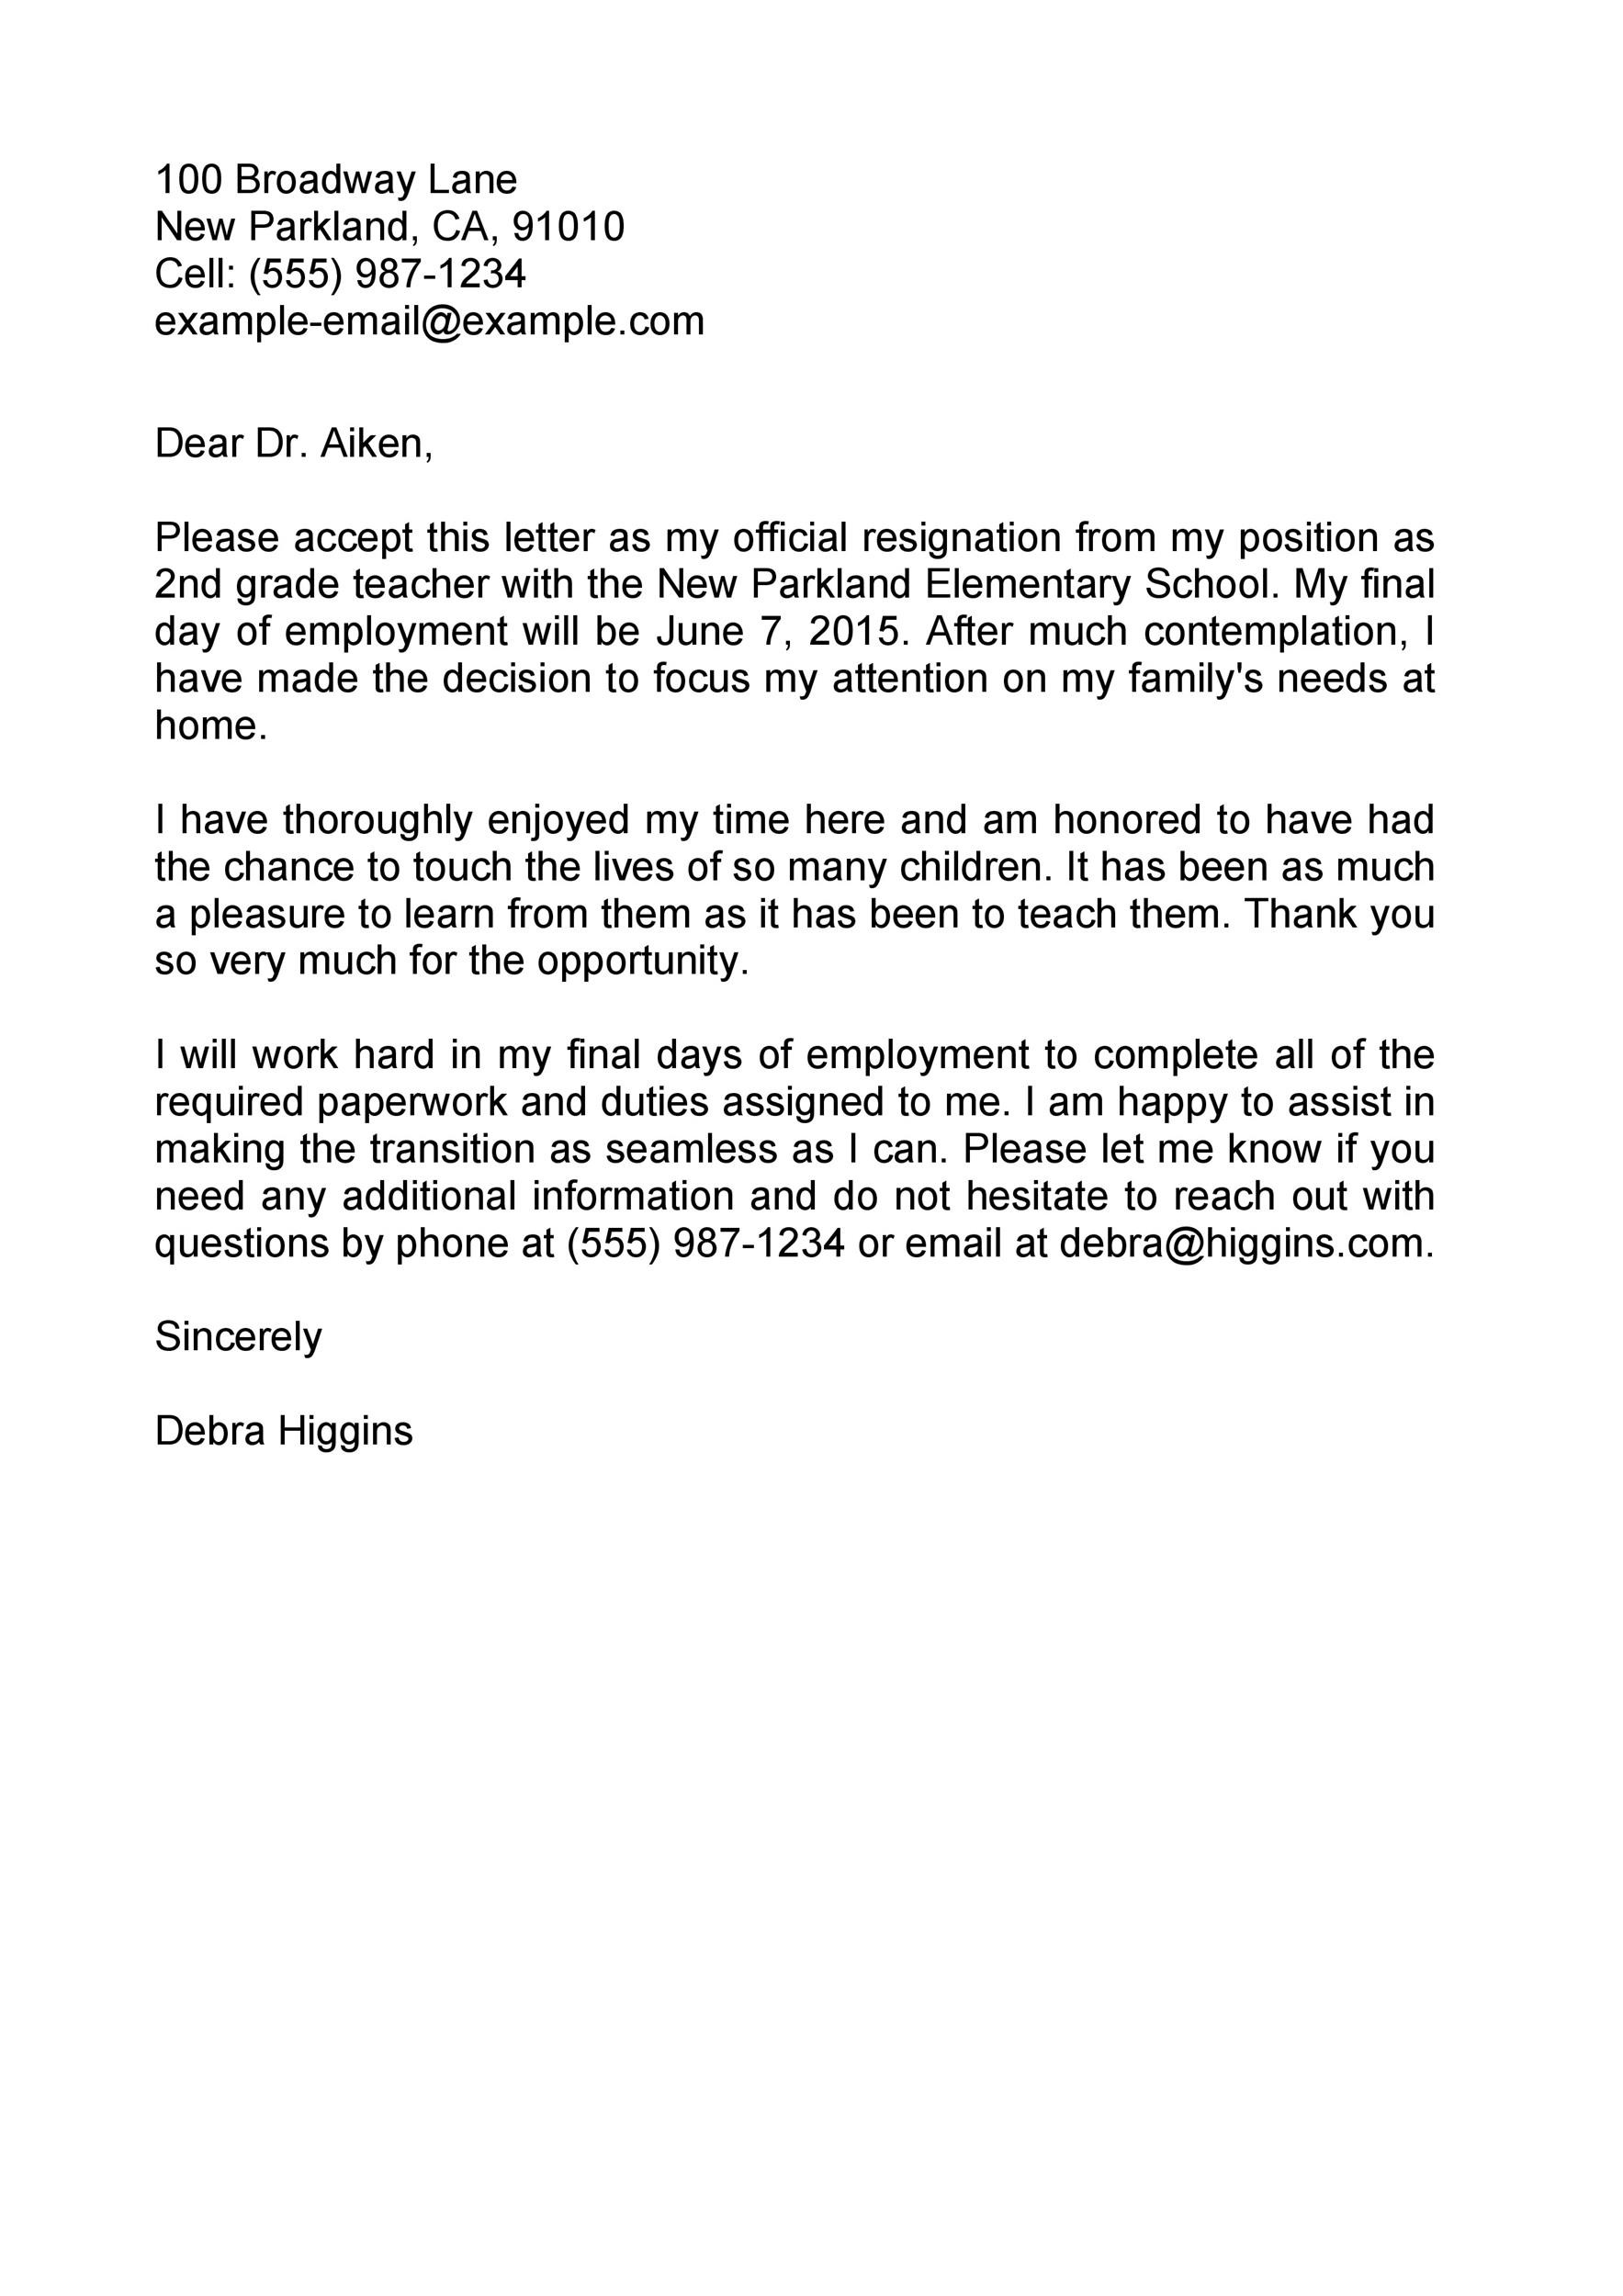 Best Resignation Letter Of Teacher Sample Resignation Letter Images